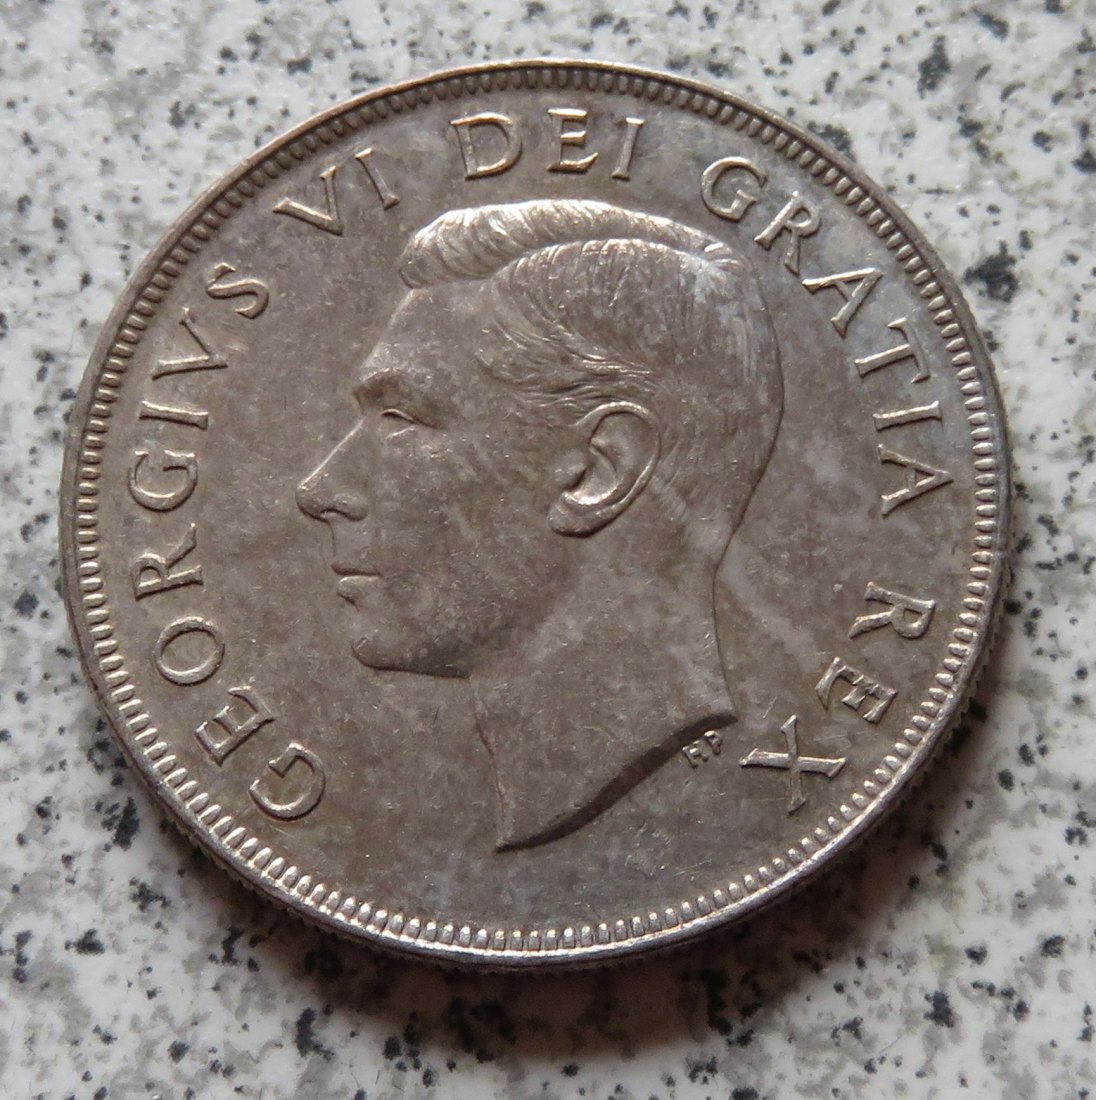  Canada 1 Dollar 1952   